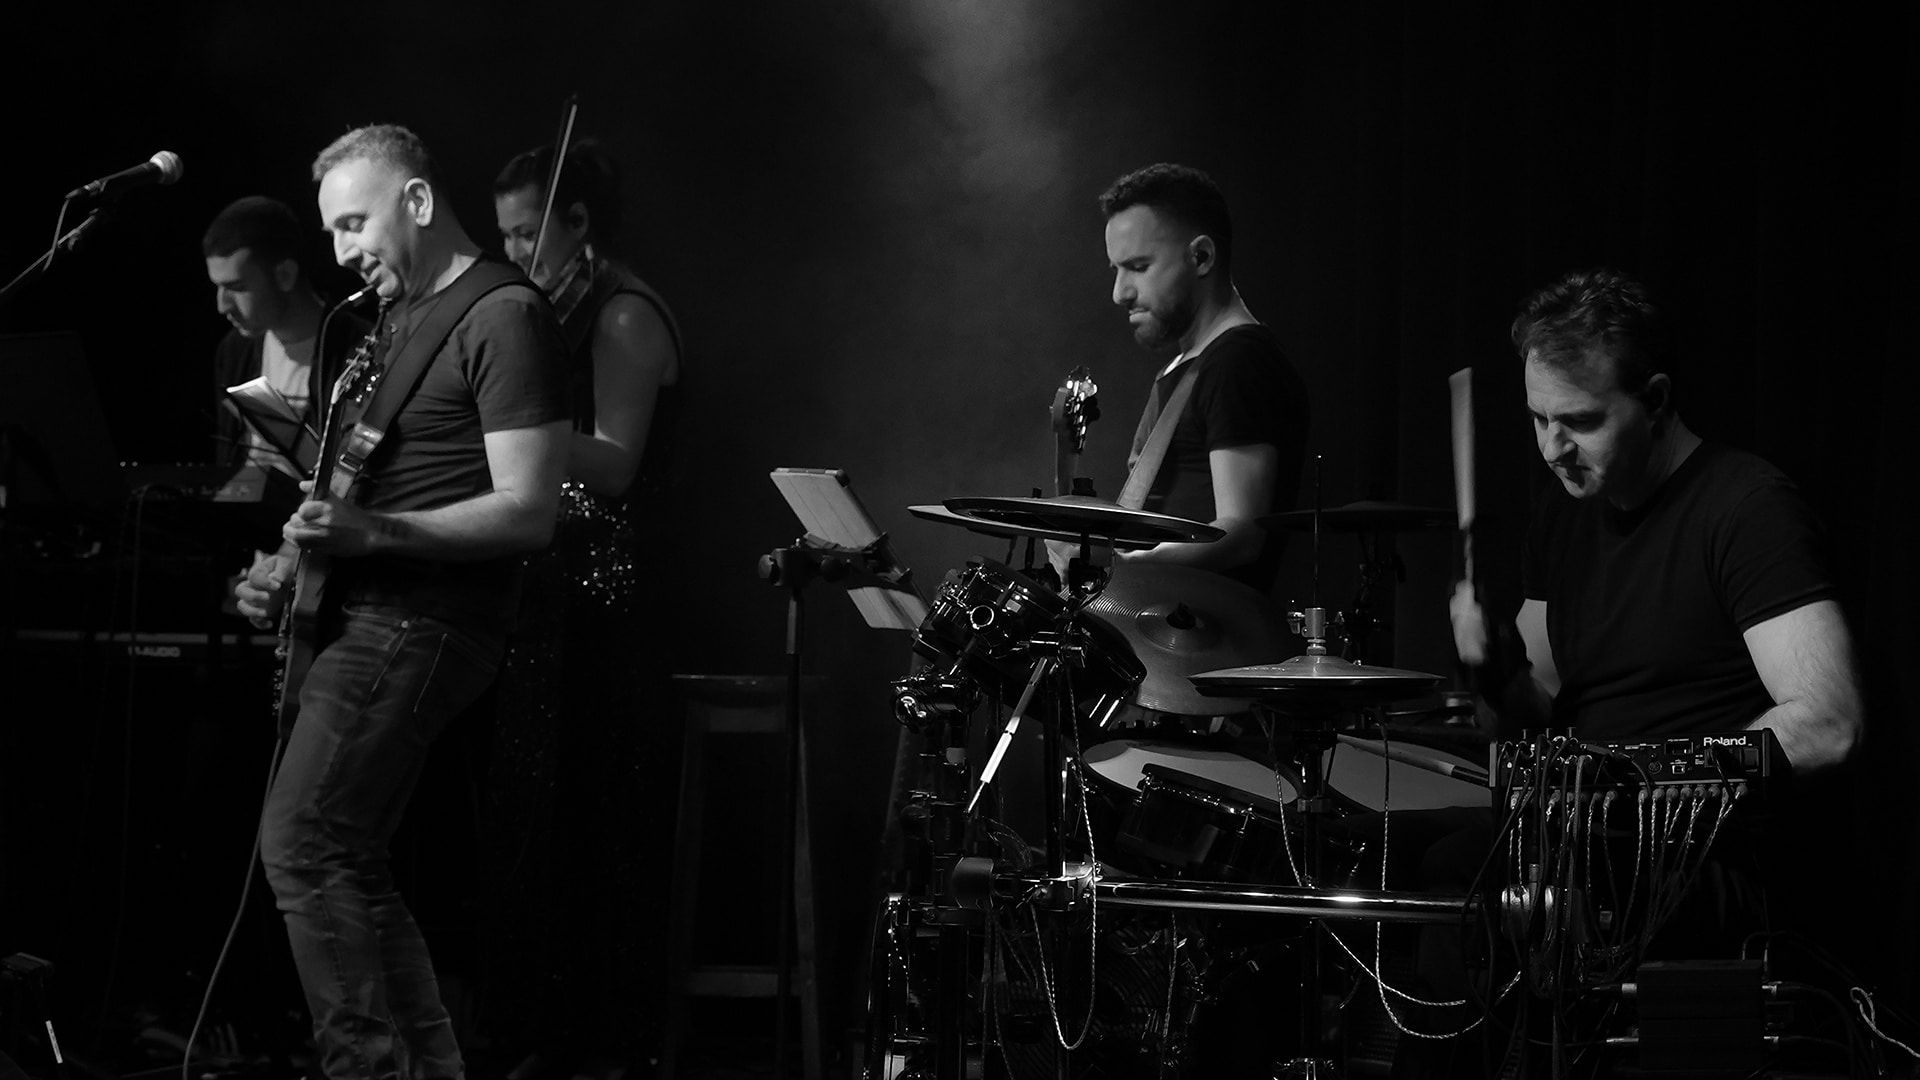 להקת הרוק קאדנס במהלך הופעה על הבמה בתל אביב. אמיר בתופים, רן גיטרה ושירה. יש גם כינור. בפילטר שחור.